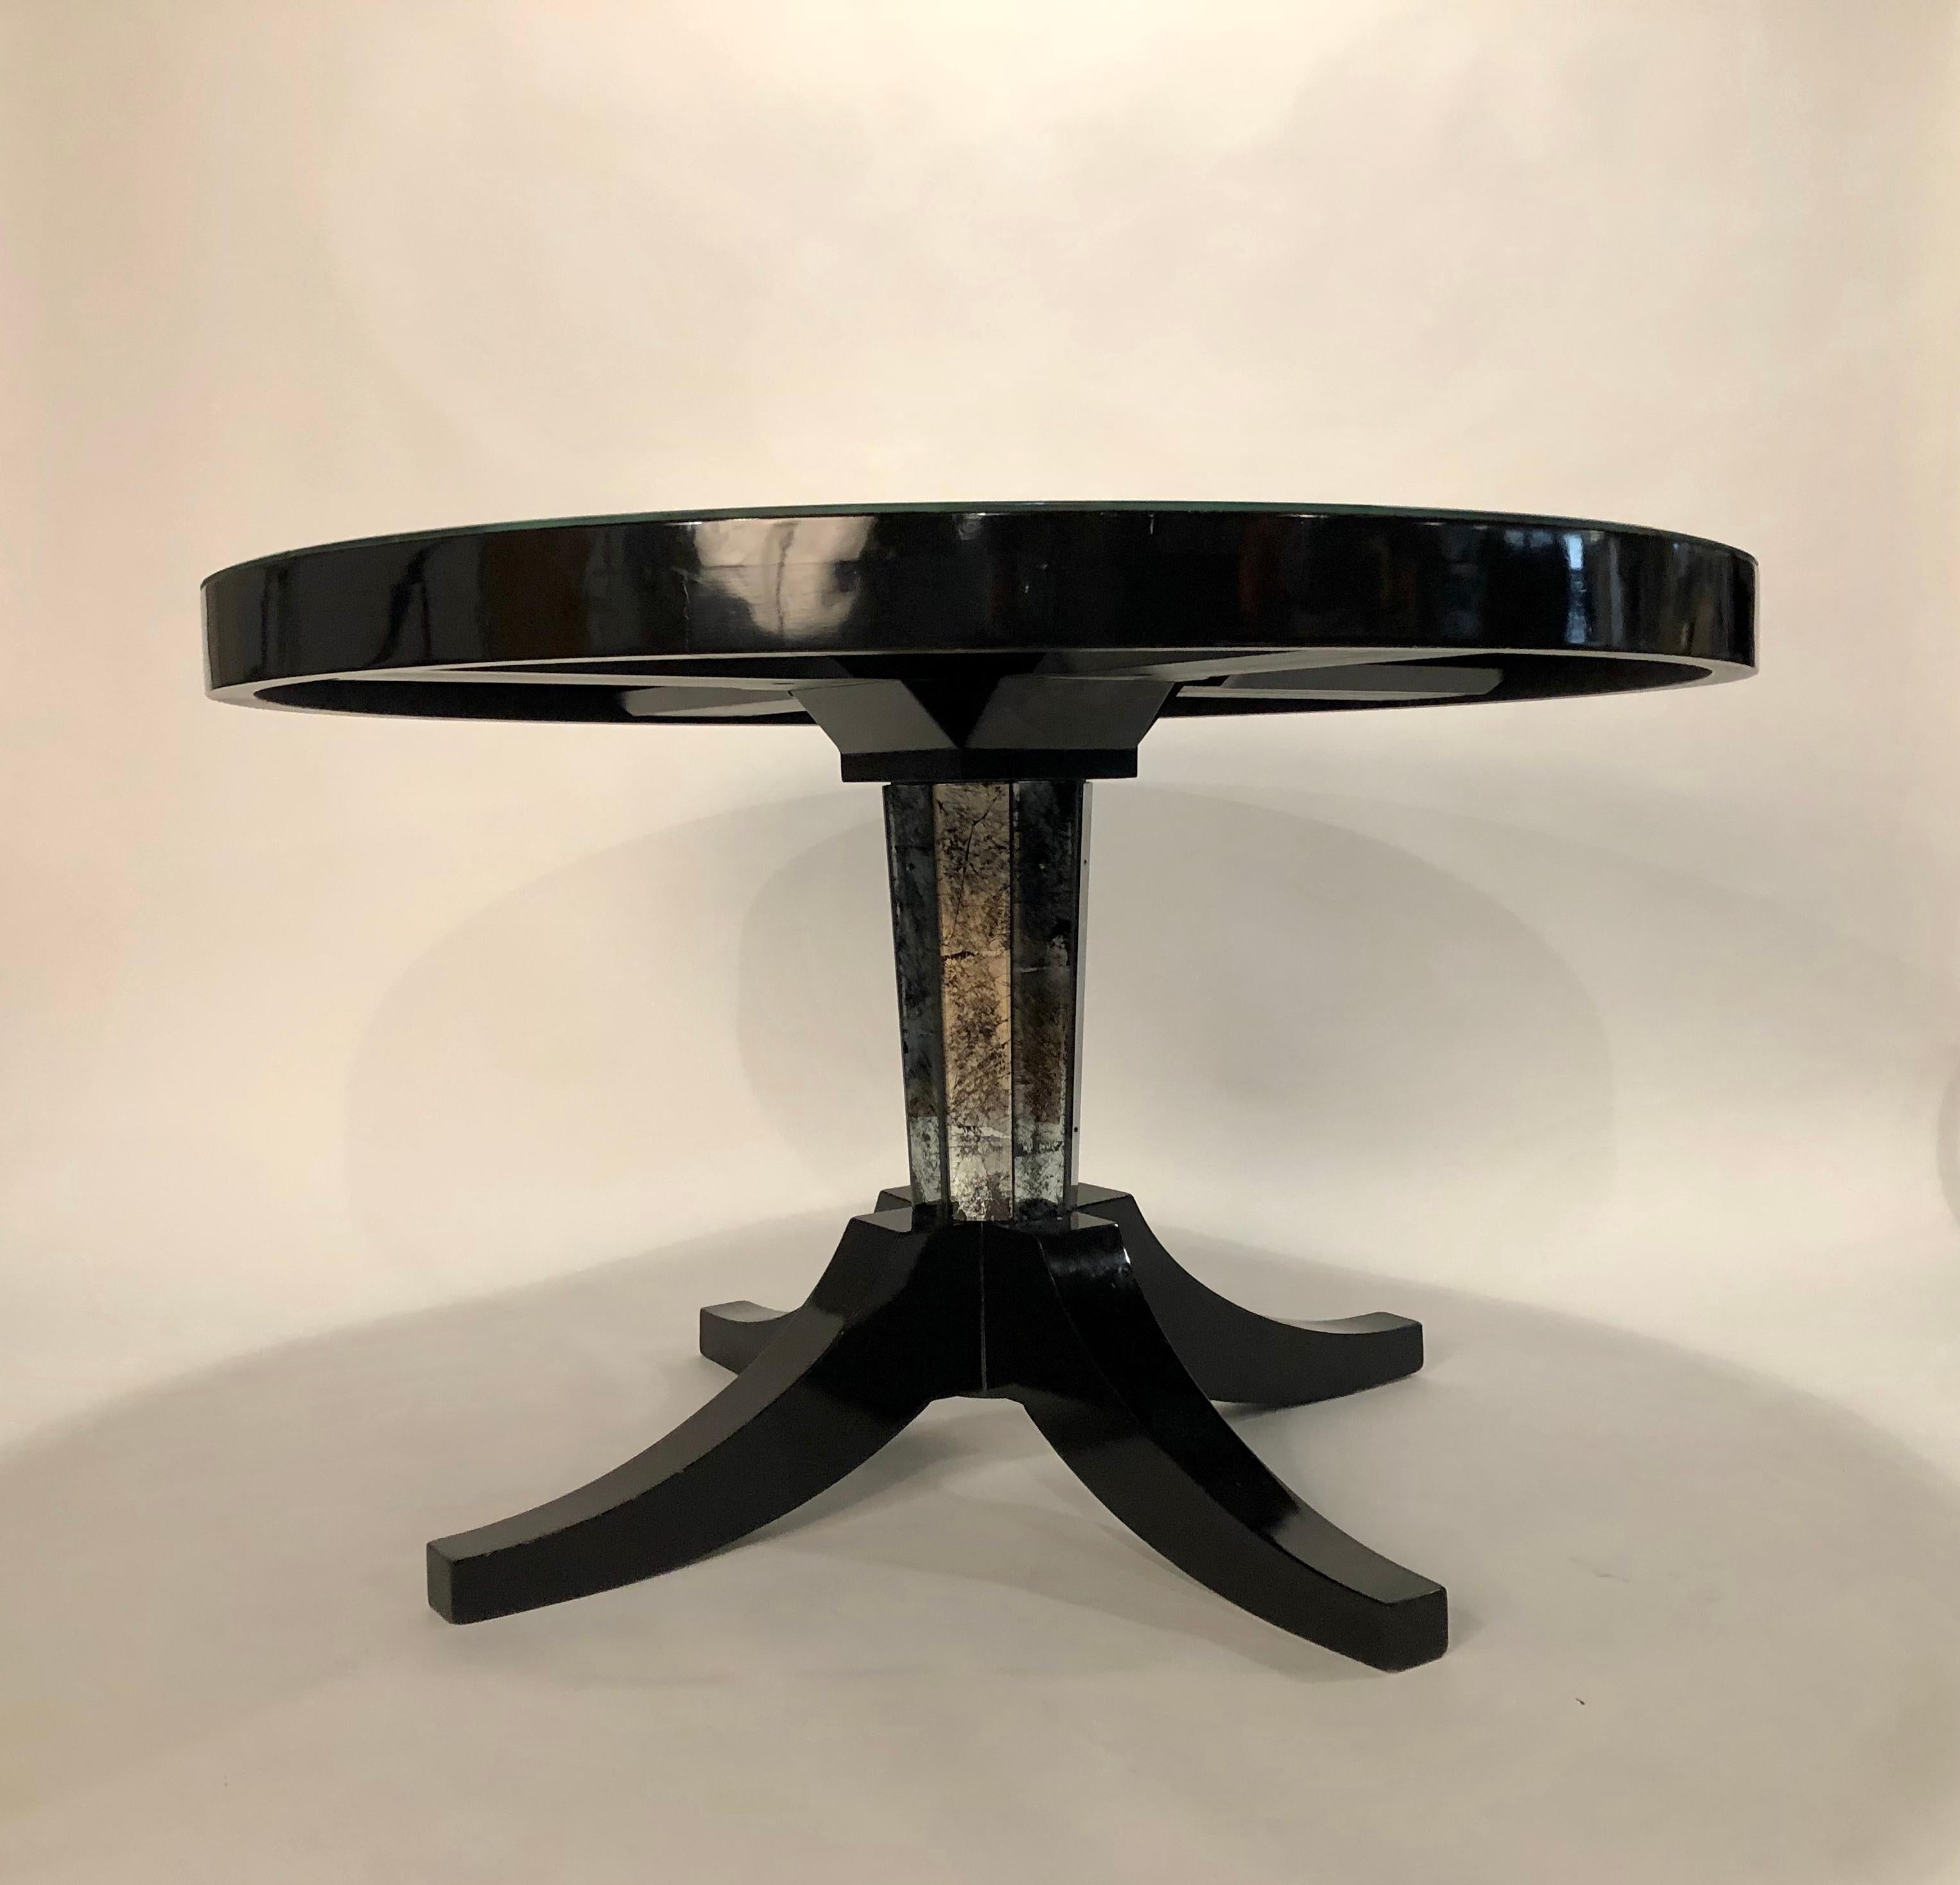 Exquise table Gueridon de la Maison Jansen en laque noire et plateau en miroir argenté/noir. La gorge de la base fait écho au sommet de l'Églomisé.